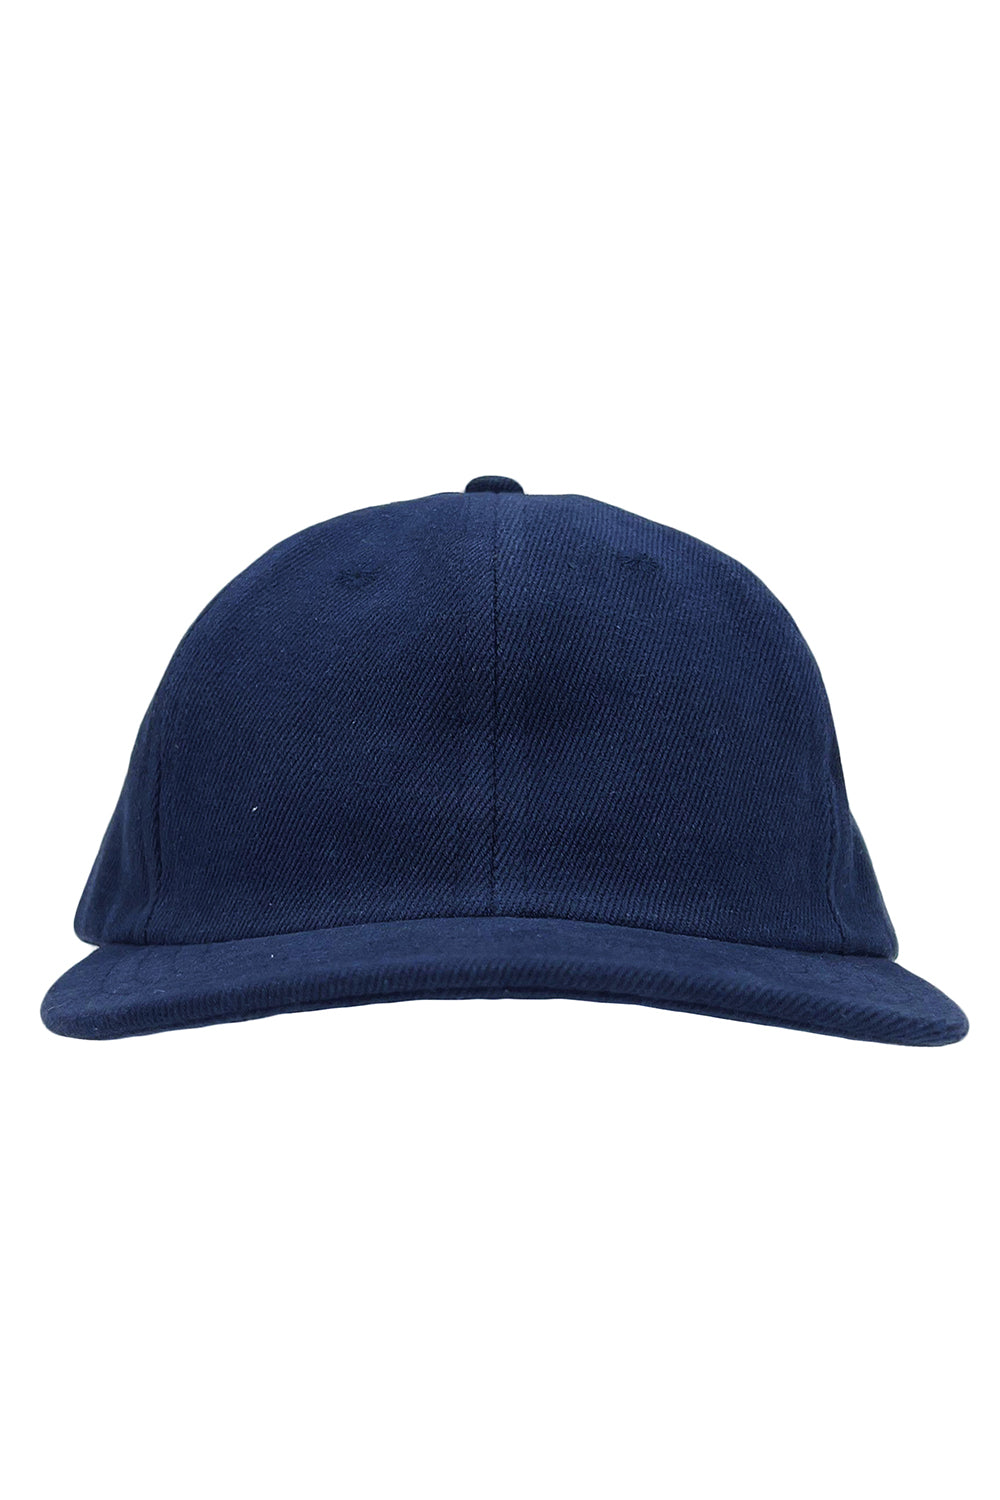 Pink Or Blue We Love You Snapback Hat Flat Bill Hats Brim Baseball Cap for  Men Adjustable